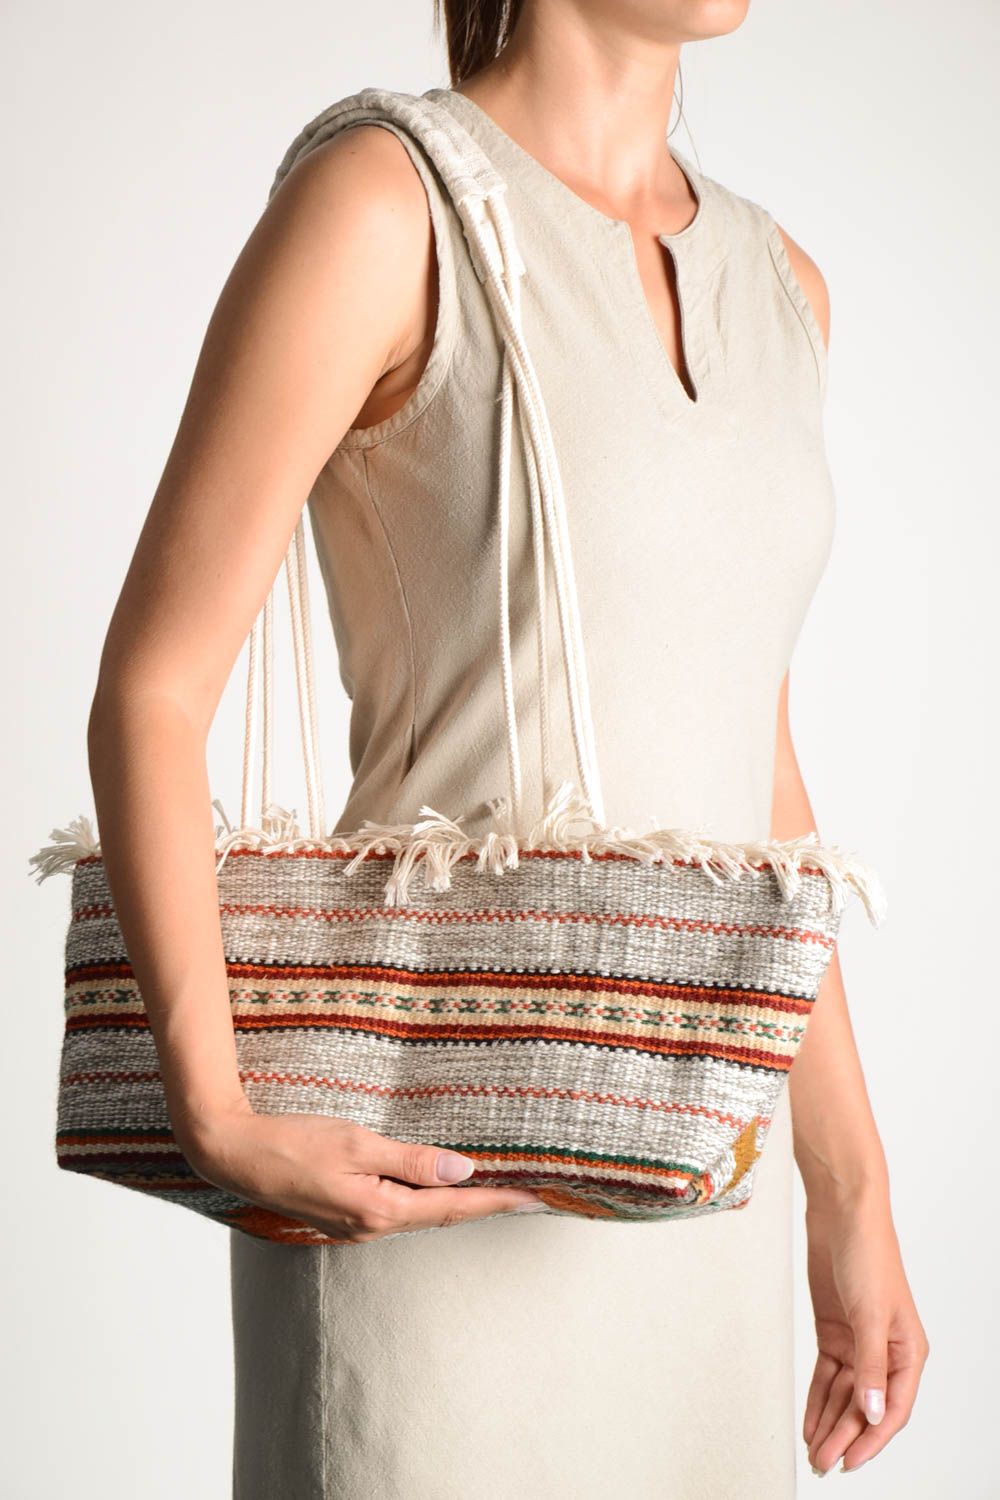 Handmade Damen Tasche aus Textil Accessoire für Frauen Umhänge Tasche ethnisch foto 1